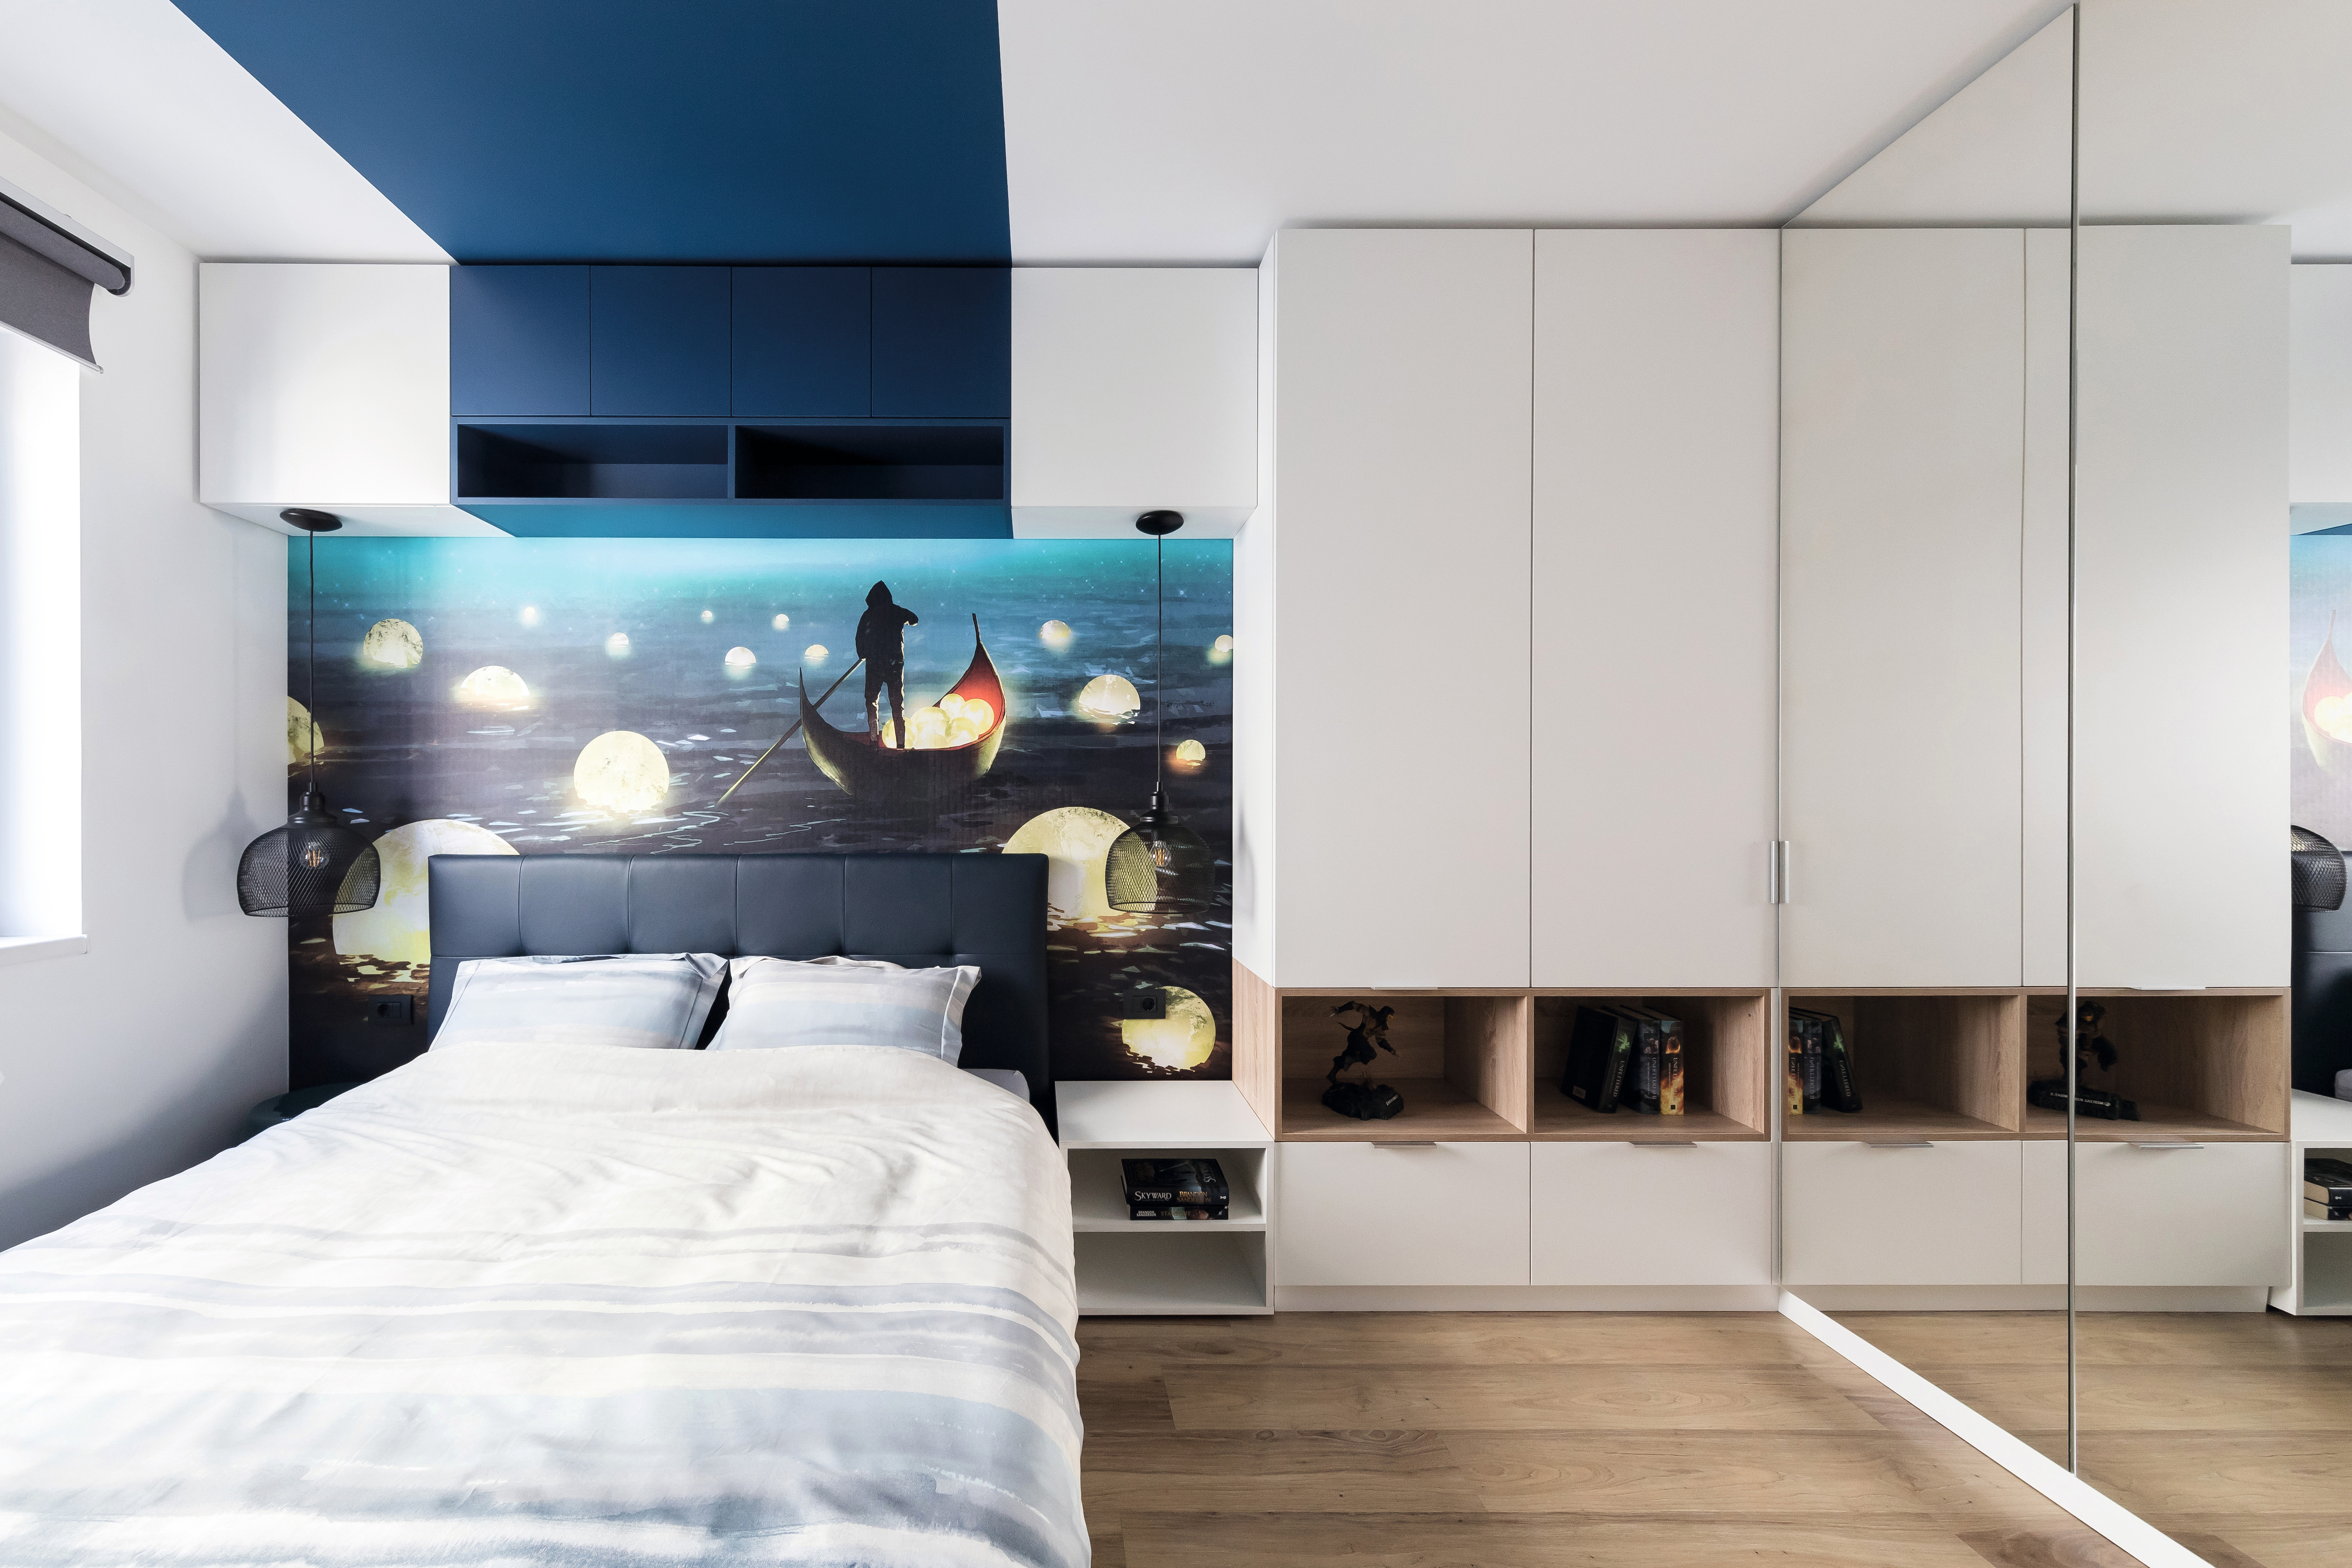 Une atmosphère propice au sommeil dans la chambre grâce aux décors U504 ST9 Bleu cosmique et W1000 ST9 Blanc premium.